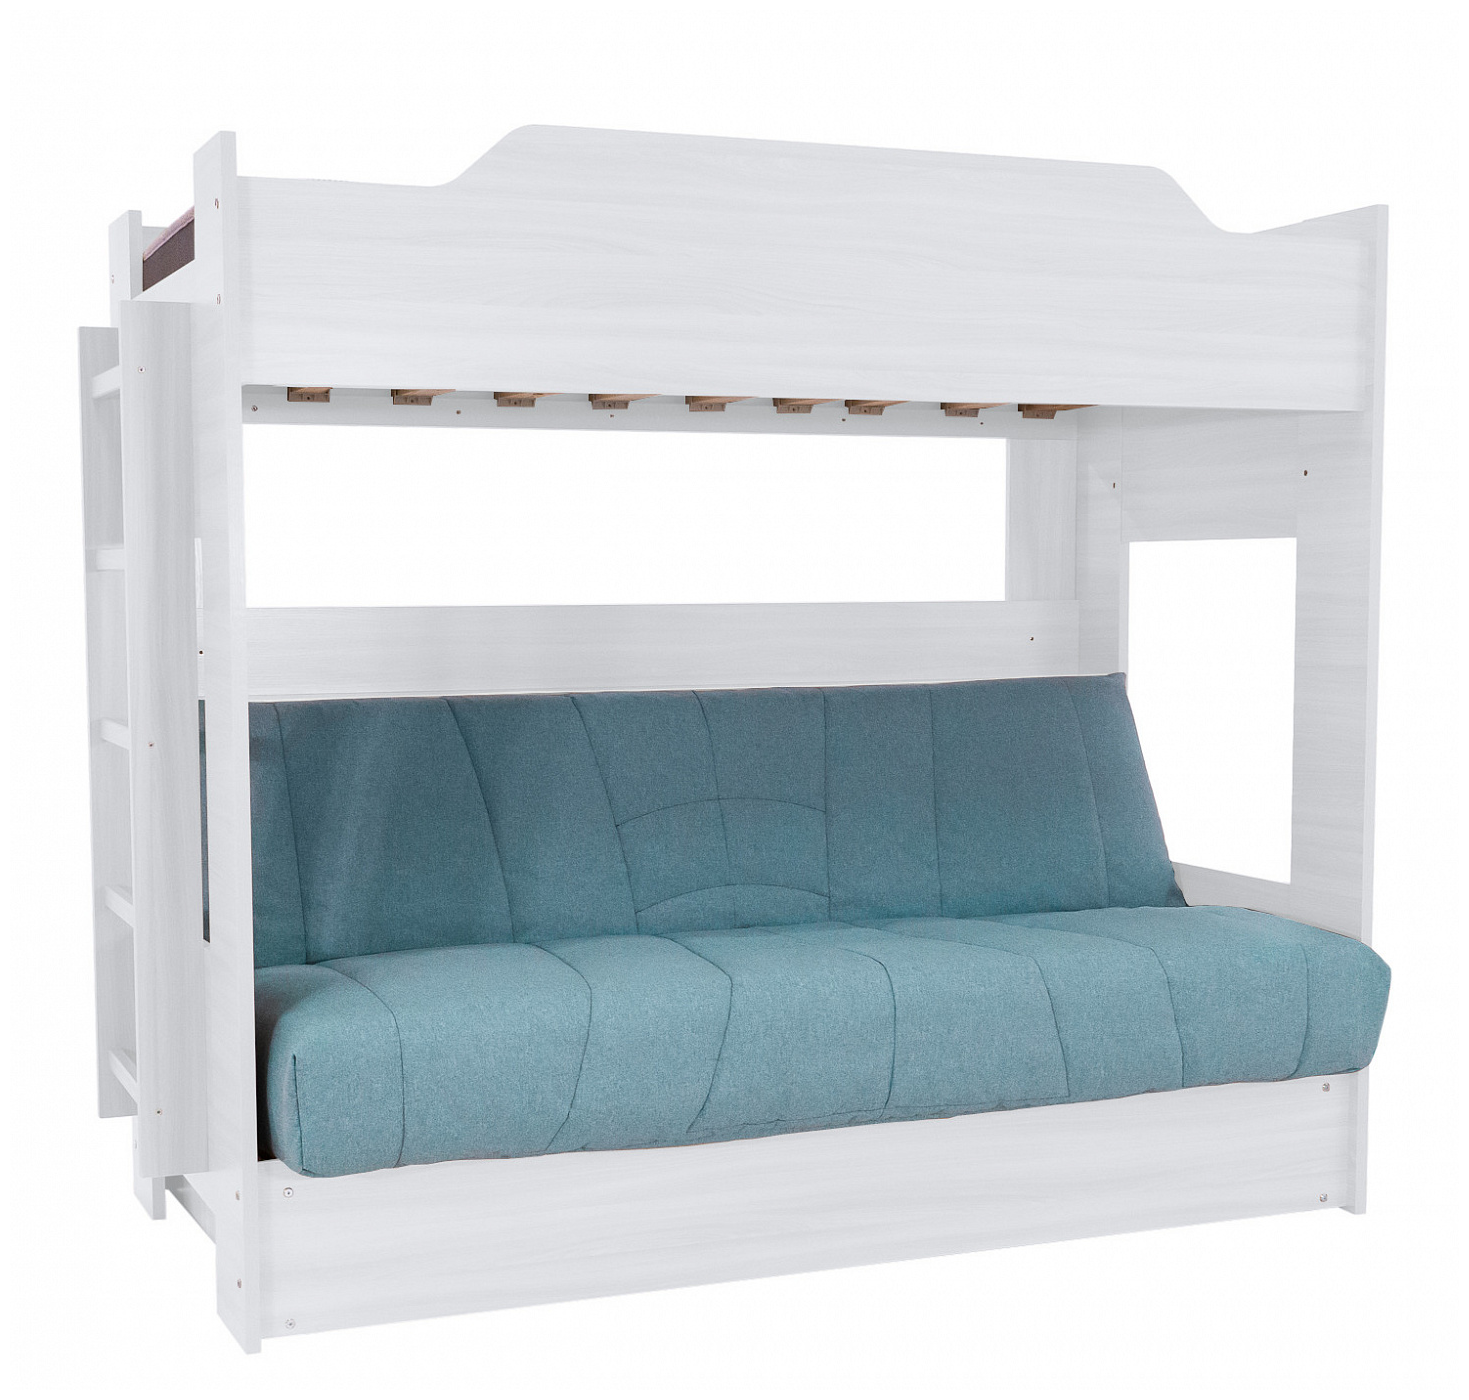 Двухъярусная с диваном кровать Эра-мебели цвет корпуса белый чехол в ассортименте